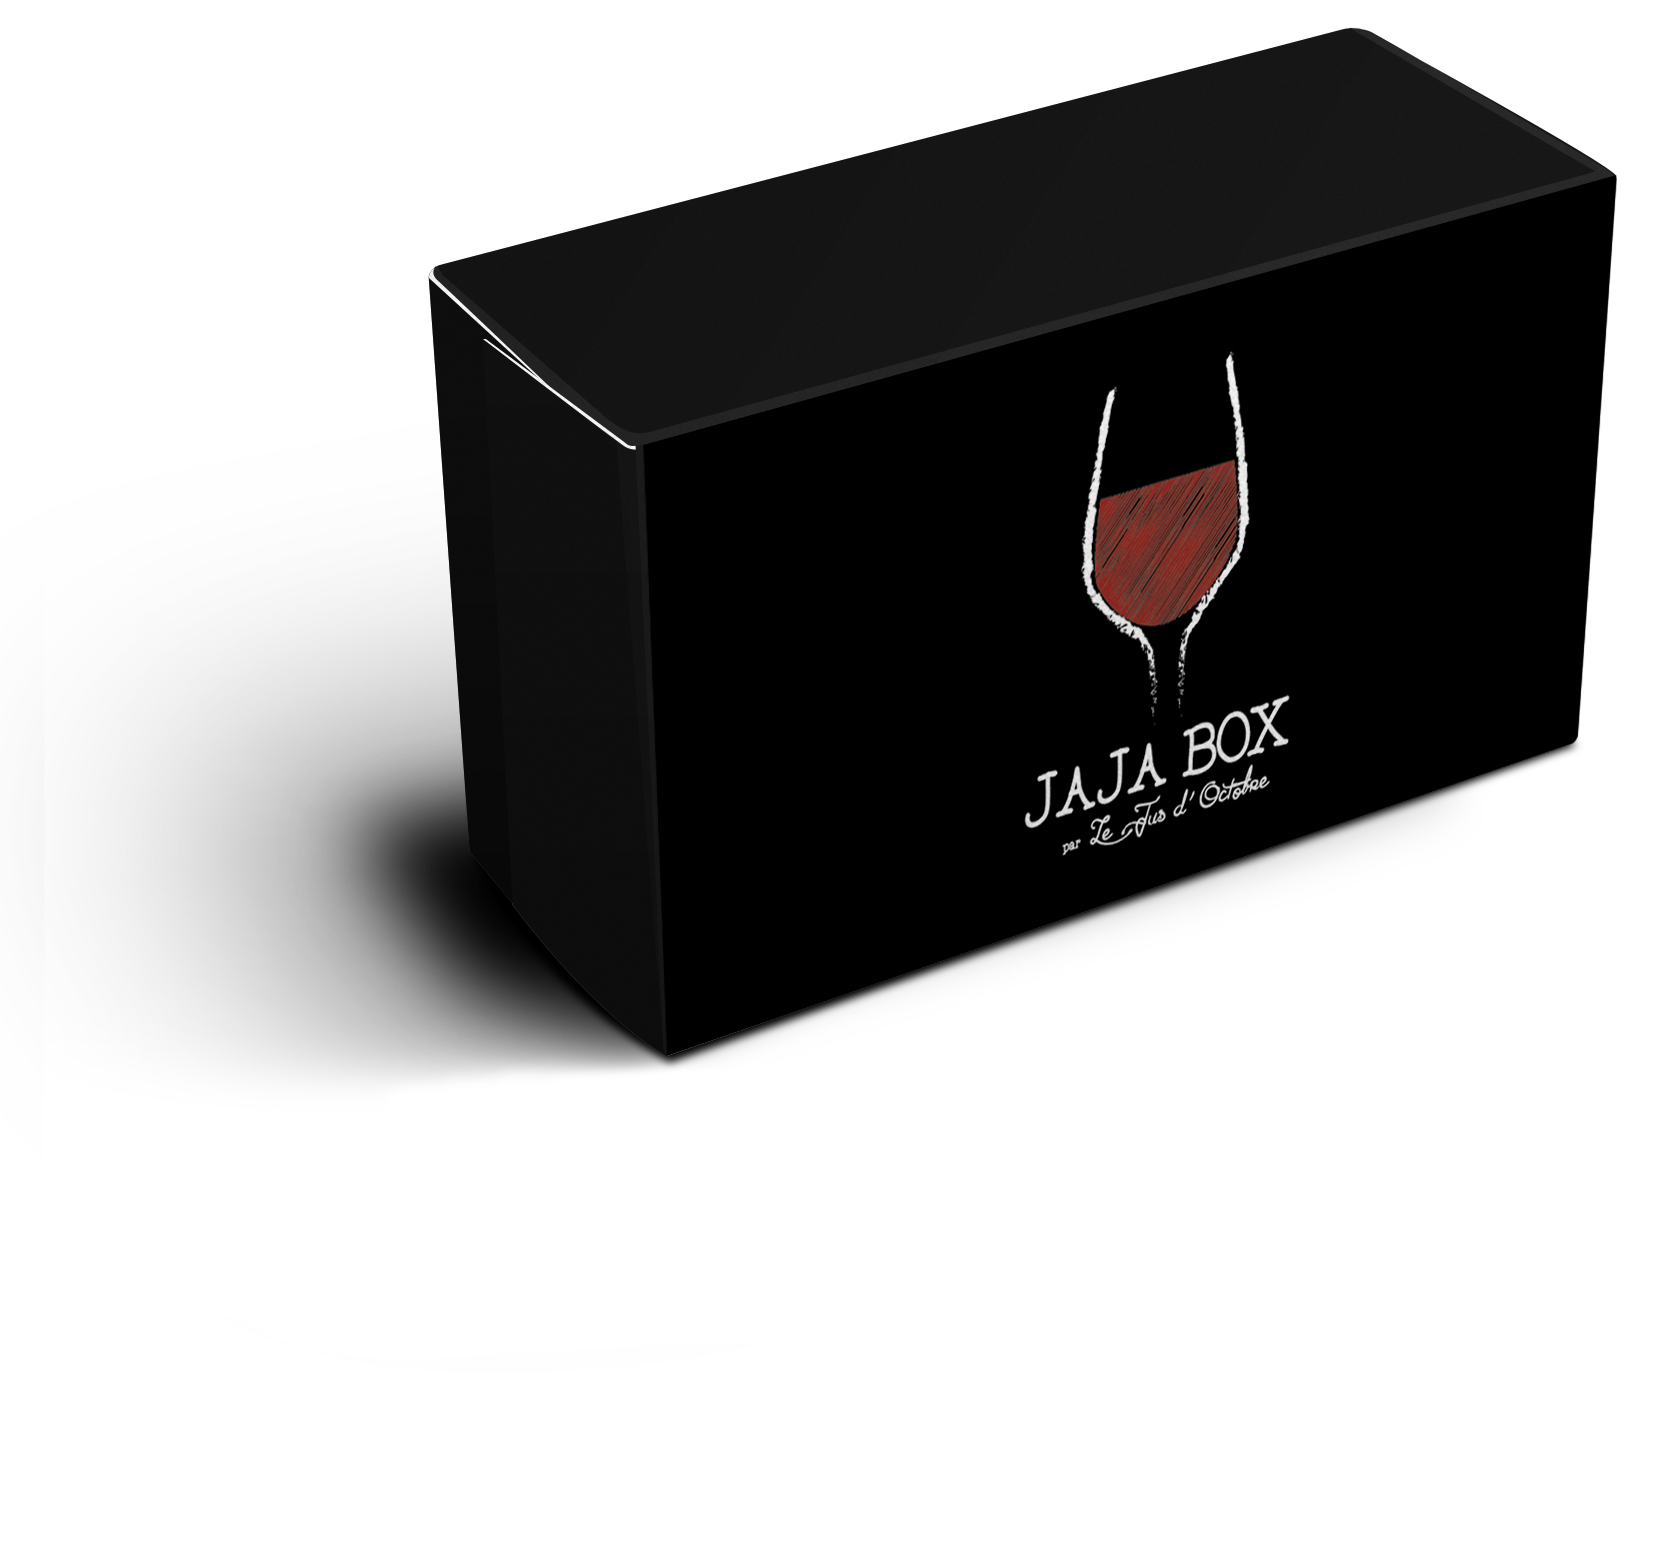 Jaja Box, sélection de vin découverte